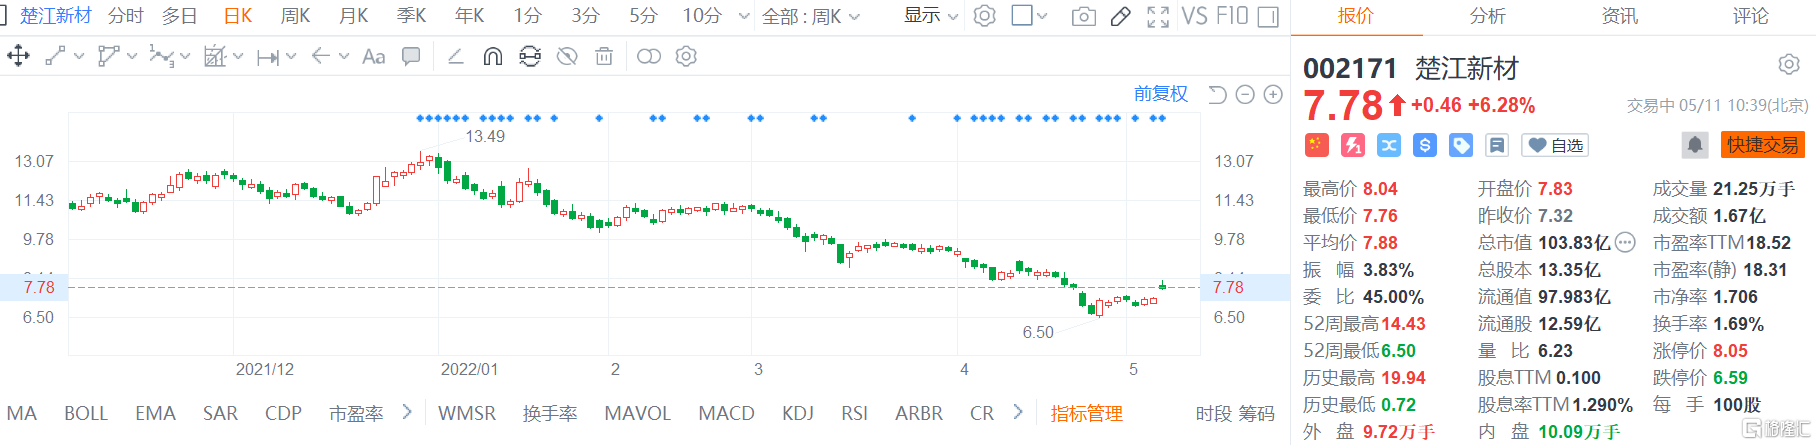 楚江新材(002171.SZ)股价高位盘整 最大涨幅逾9%现报7.78元